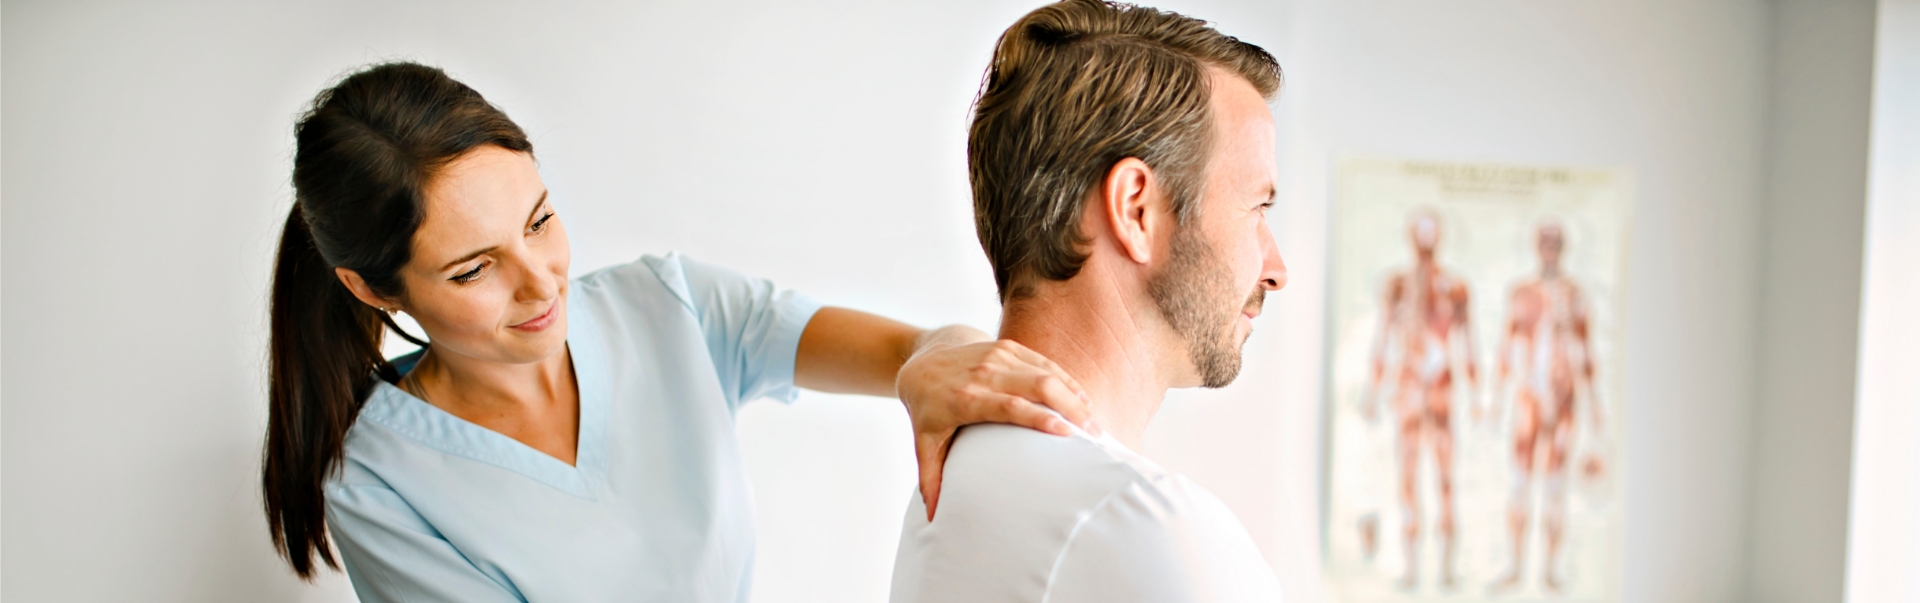 Ärztliche Fachperson behandelt zu versorgende Person am Rücken